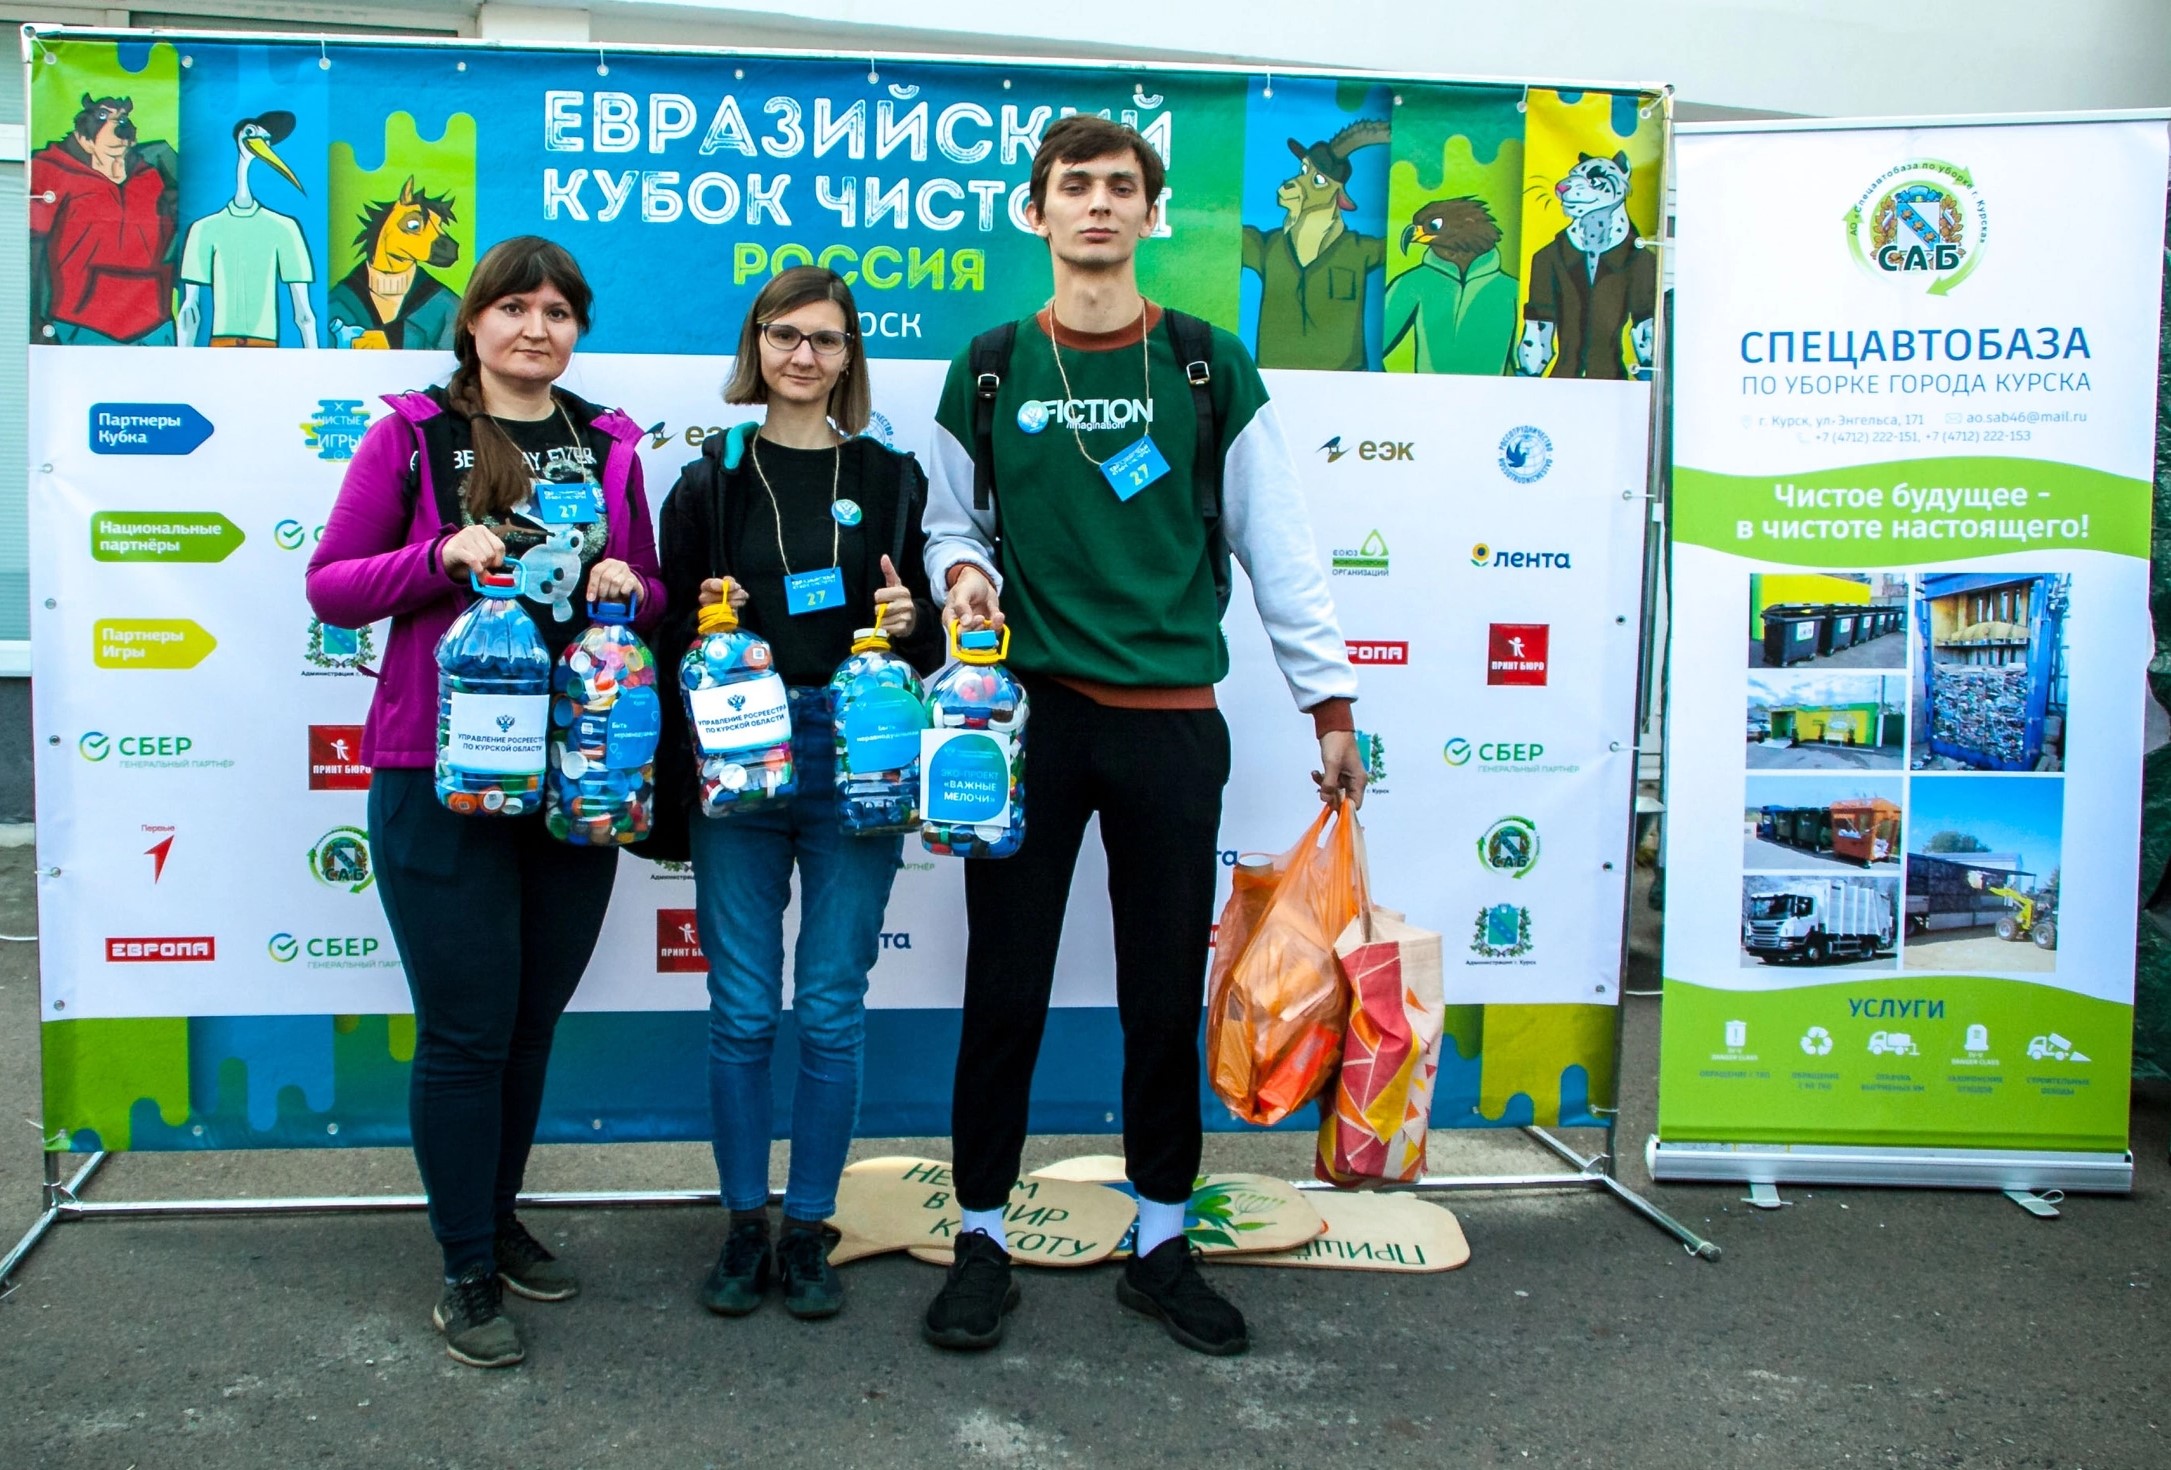 Сотрудники Управления Росреестра по Курской области приняли участие в Евразийском кубке чистоты Чистые игры.